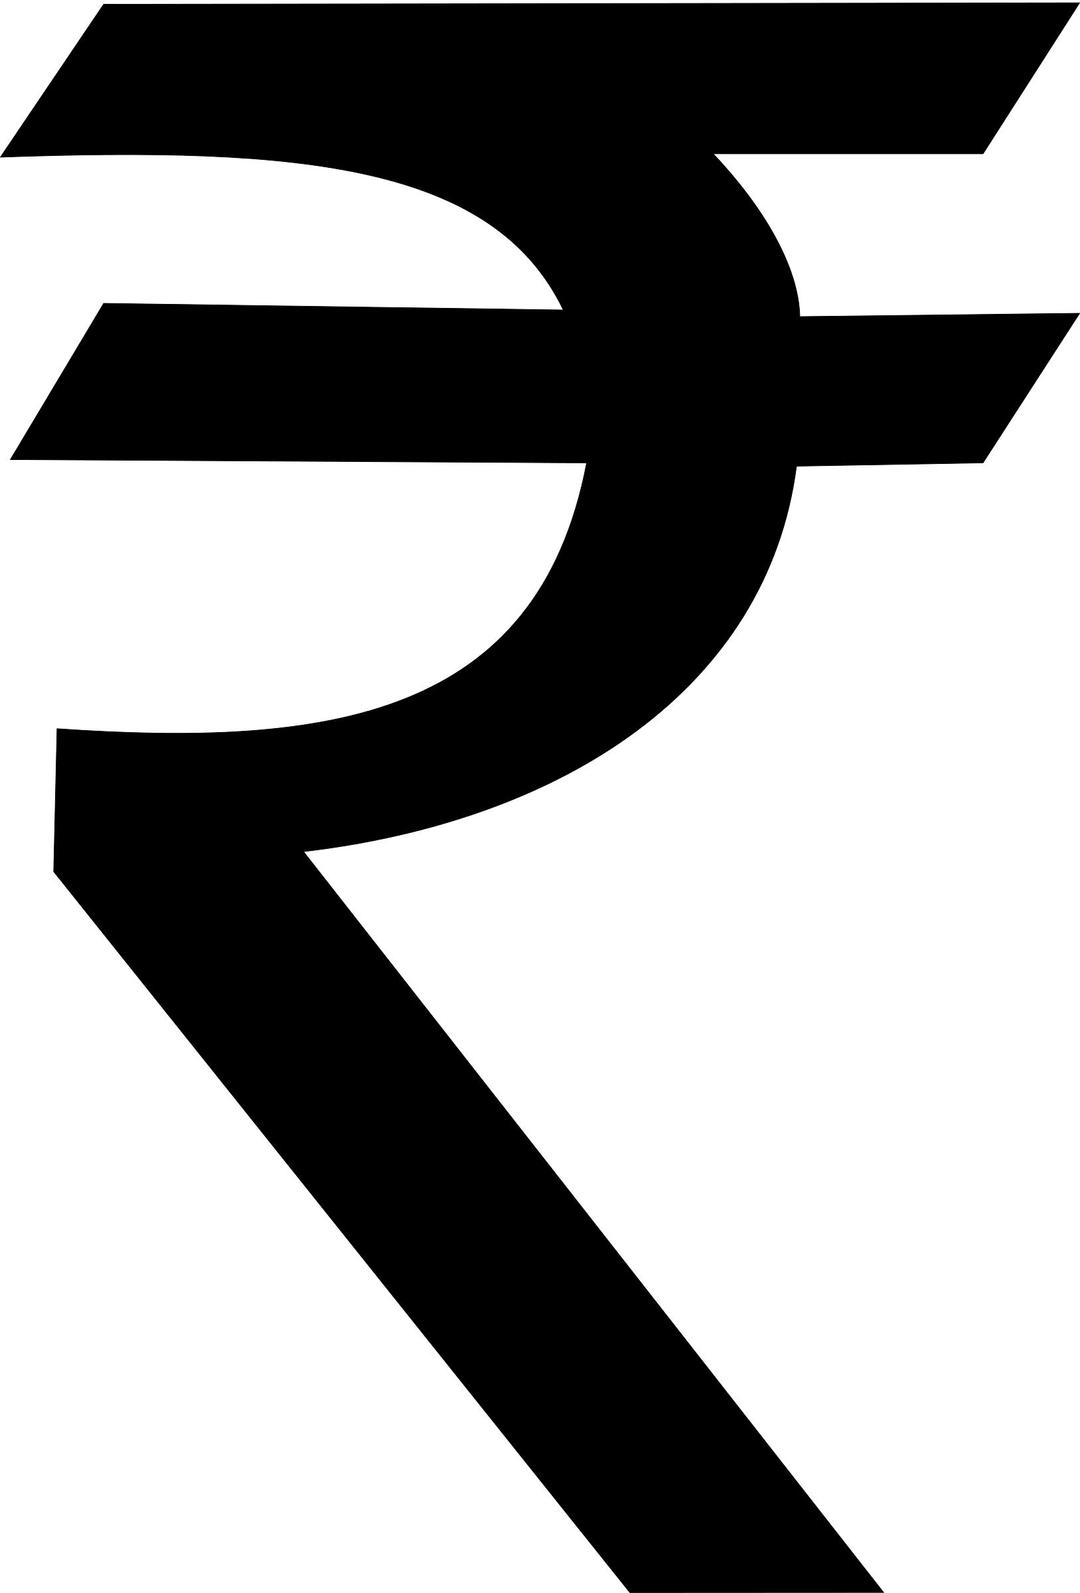 Indian Rupee Symbol png transparent